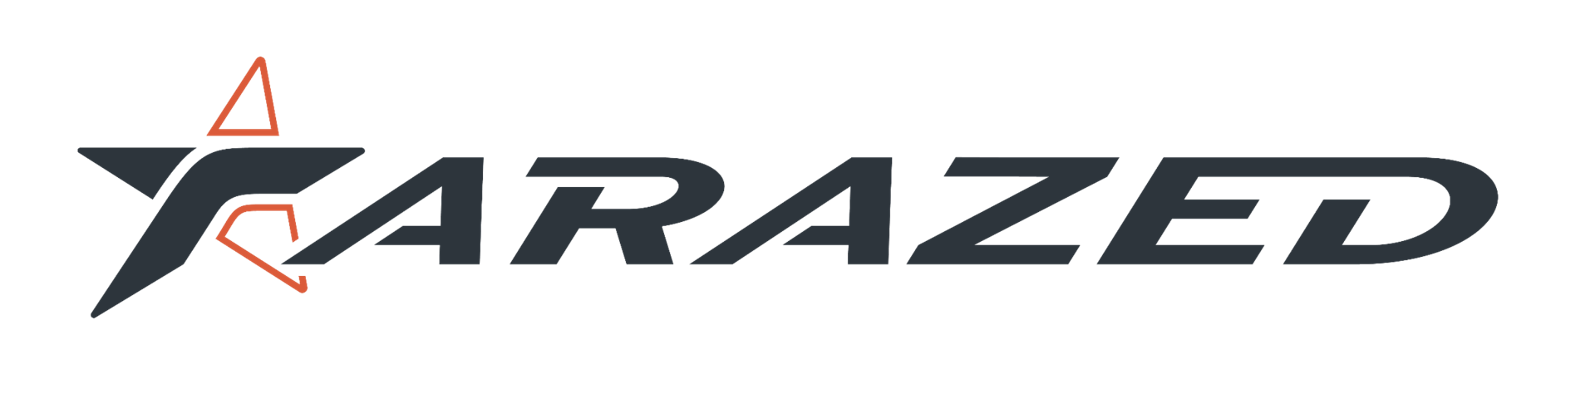 logo de l'entreprise Tarazed, anciennement Cresilas Belfort